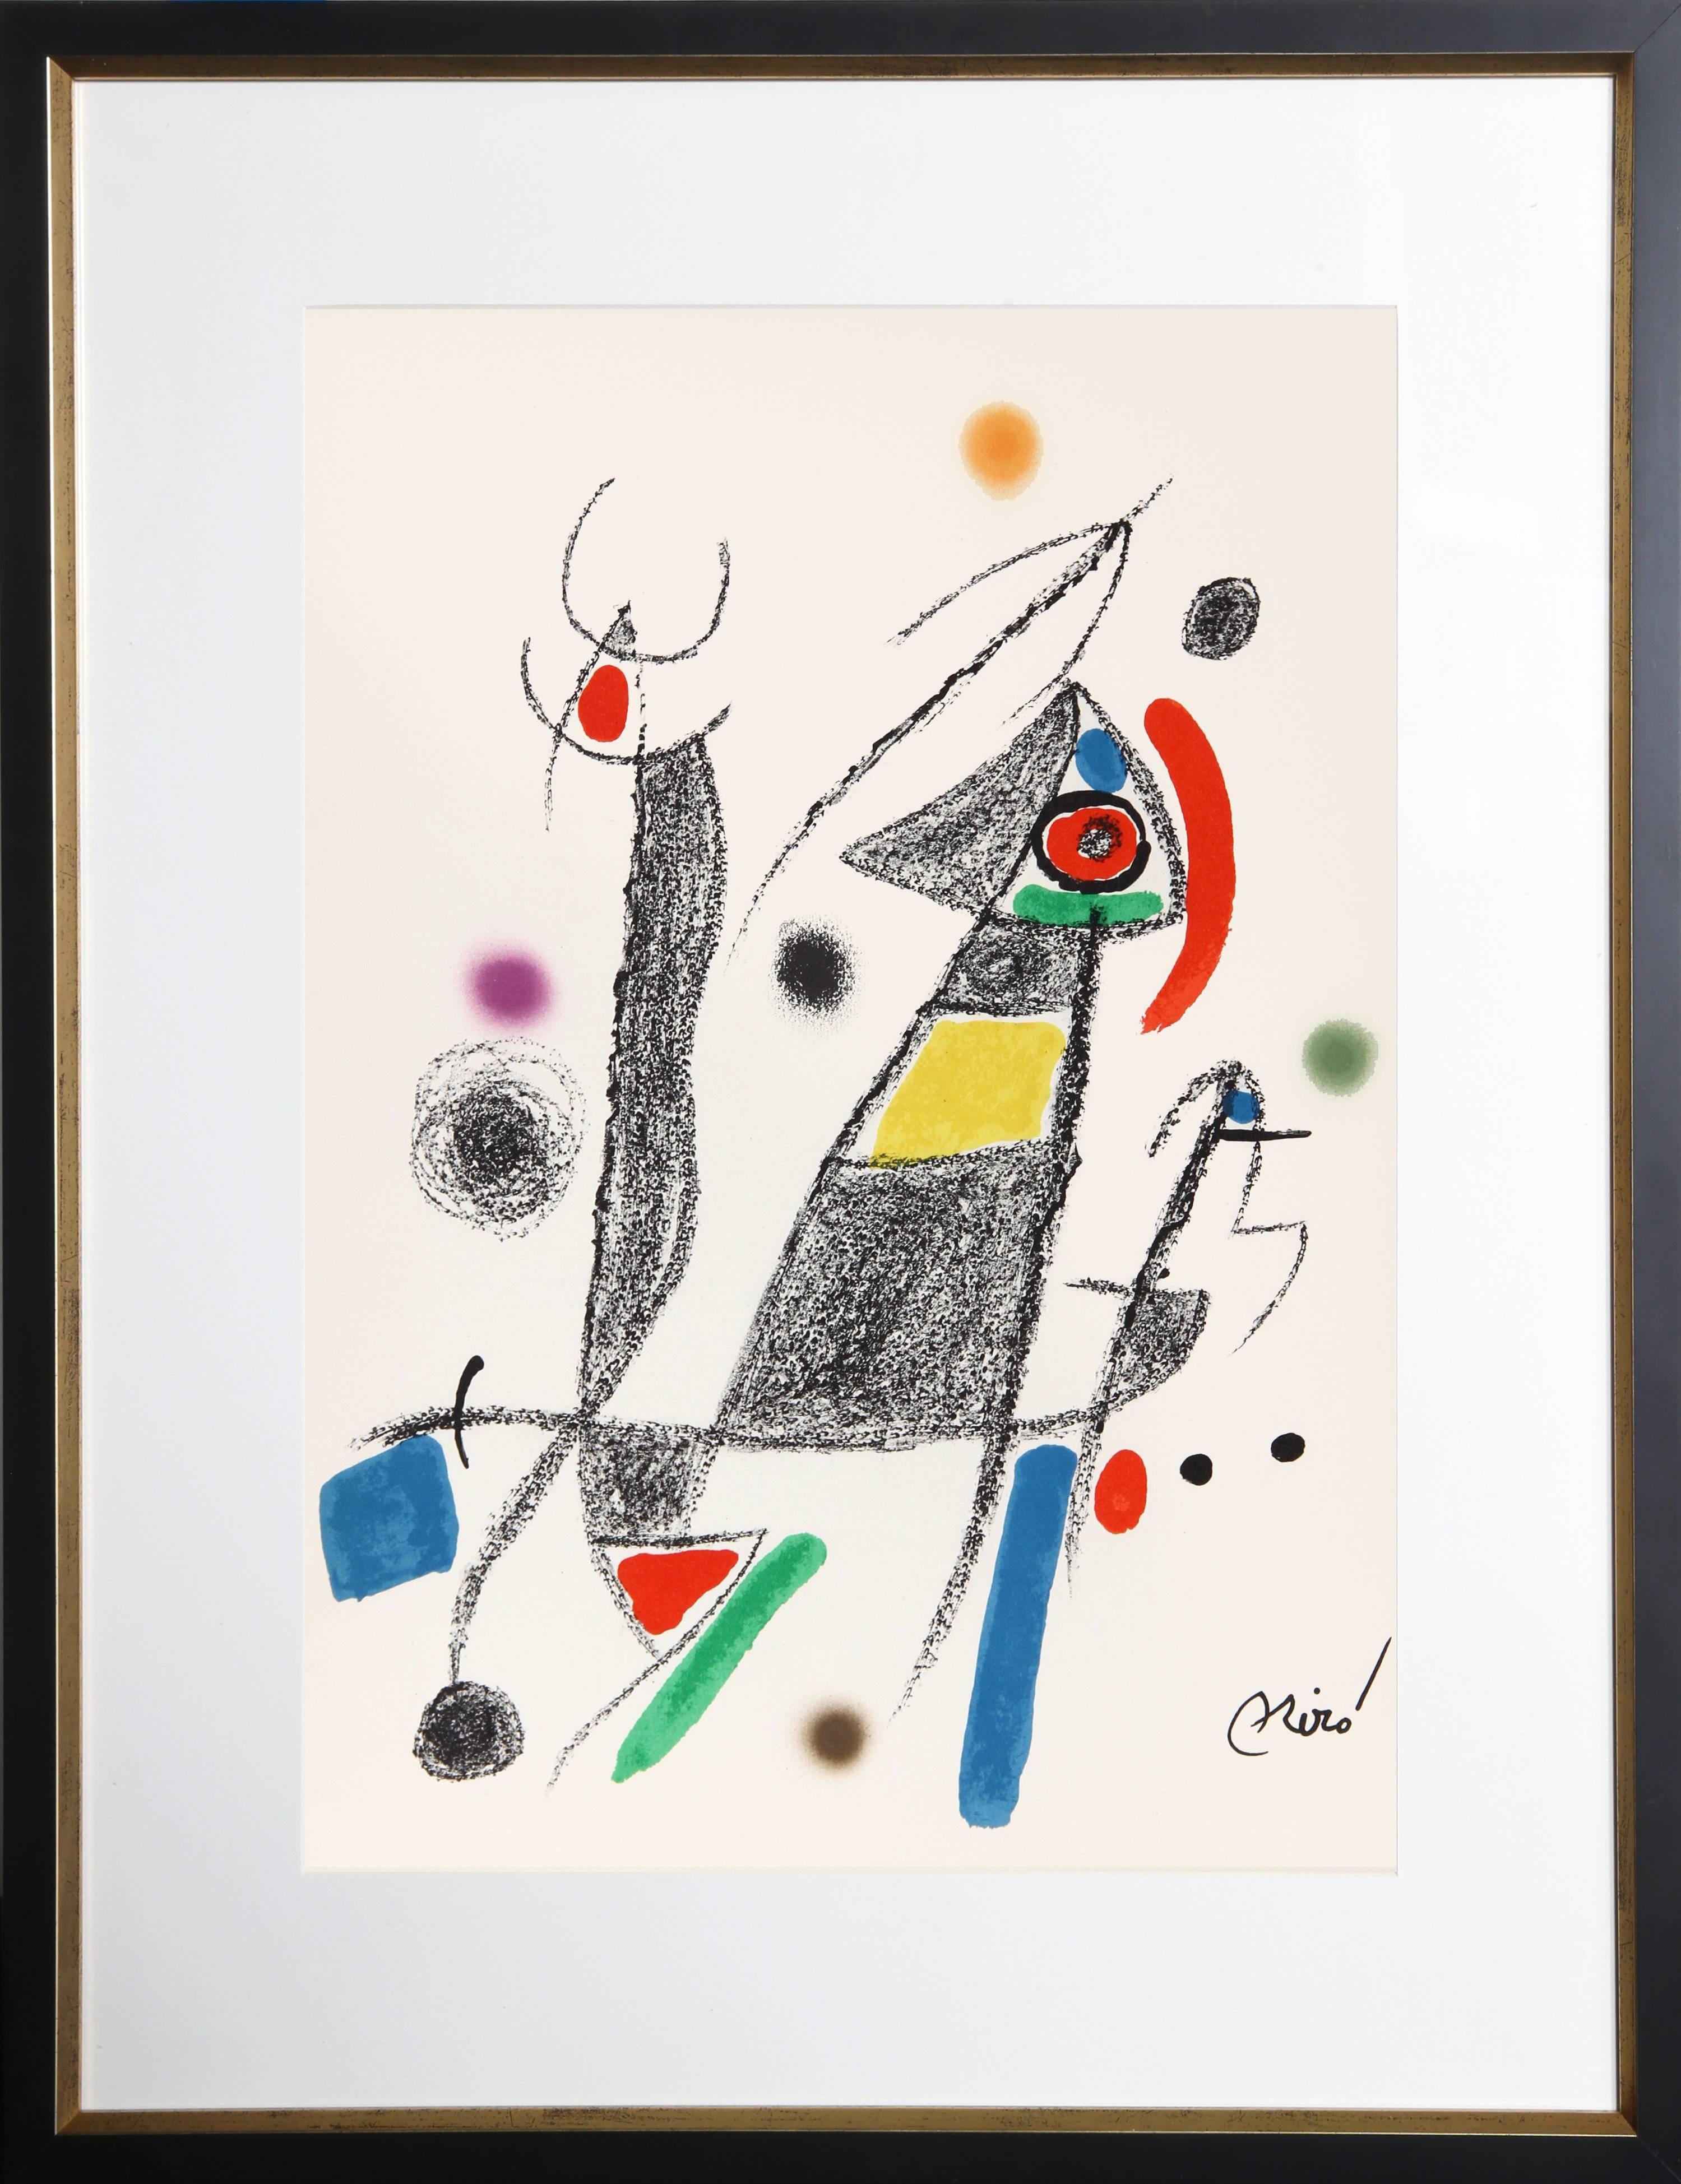 Joan Miró Abstract Print – Maravillas mit Variaciones Acrosticas im Jardin de Miro (Number 8)